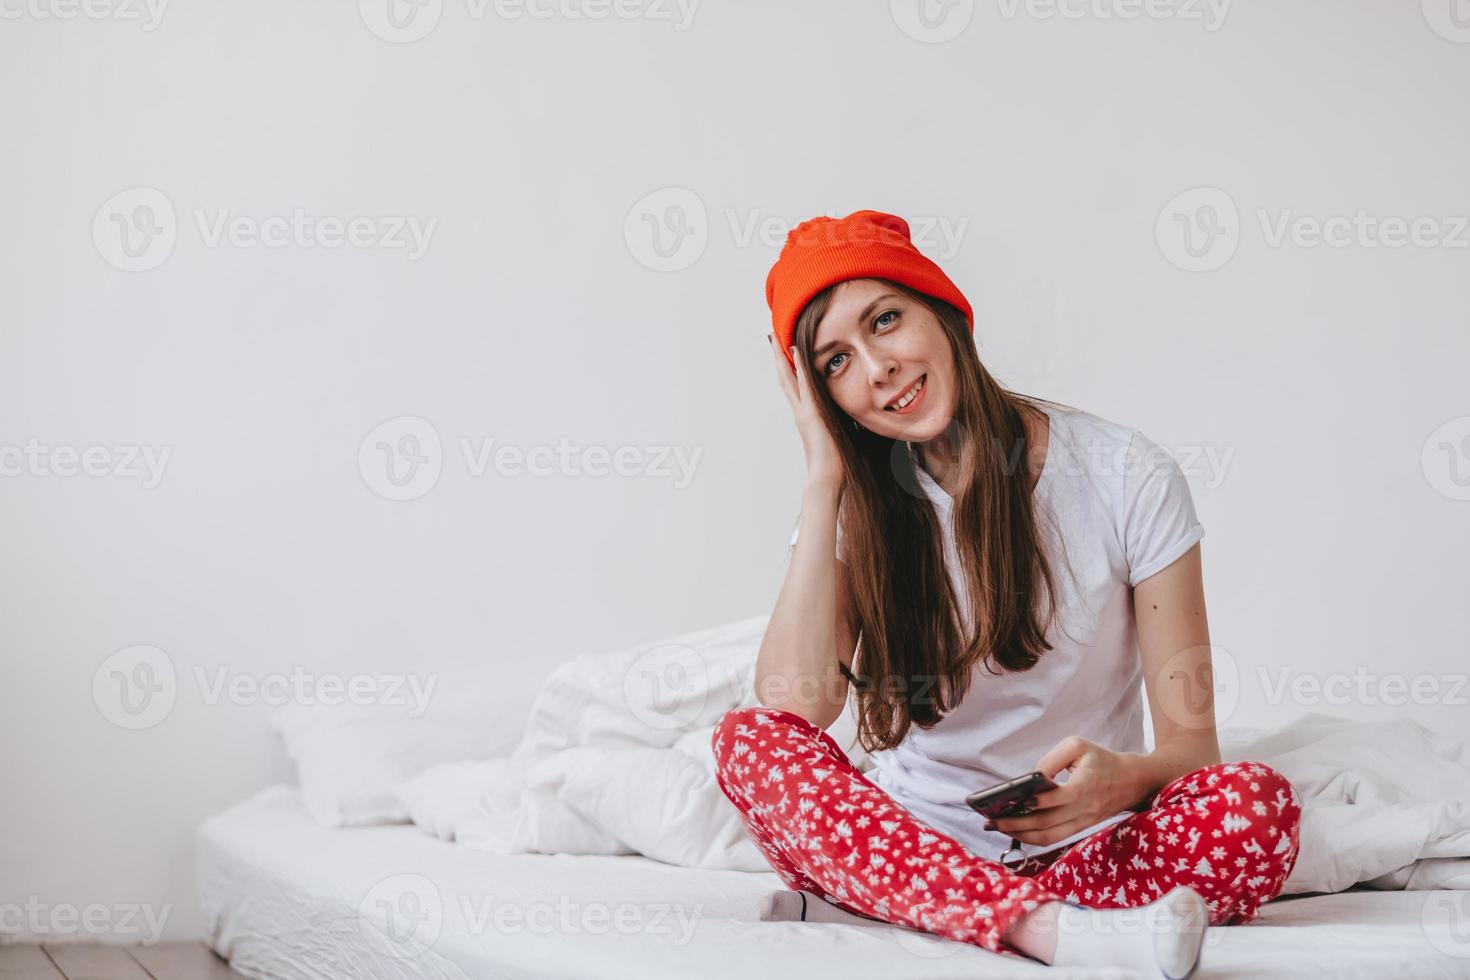 garota engraçada sorridente em um chapéu vermelho e pijama de natal, sentado na cama com lençóis brancos. feriados para o natal. garota de bom humor natalino. garota em uma camiseta branca e pijama foto